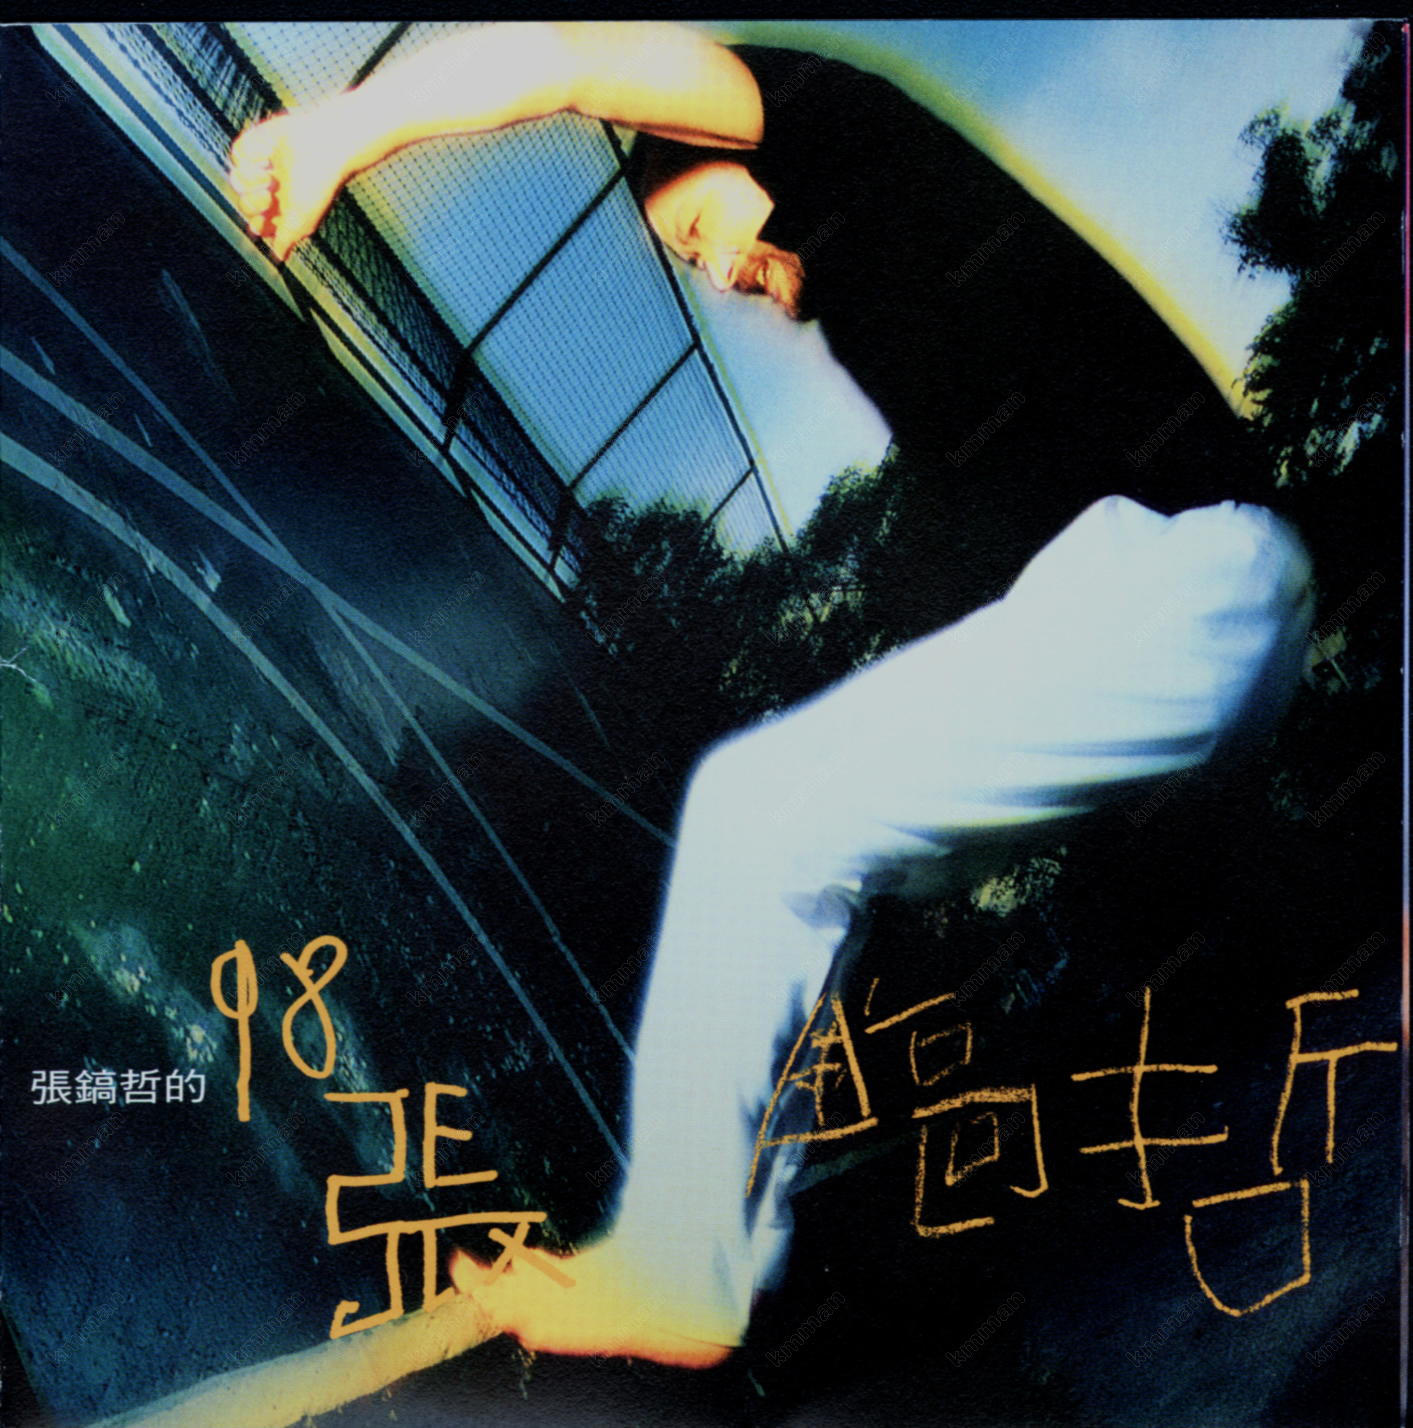 步入歌坛20年的张镐哲,已经发行过十几张个人专辑,歌唱实力雄厚的他